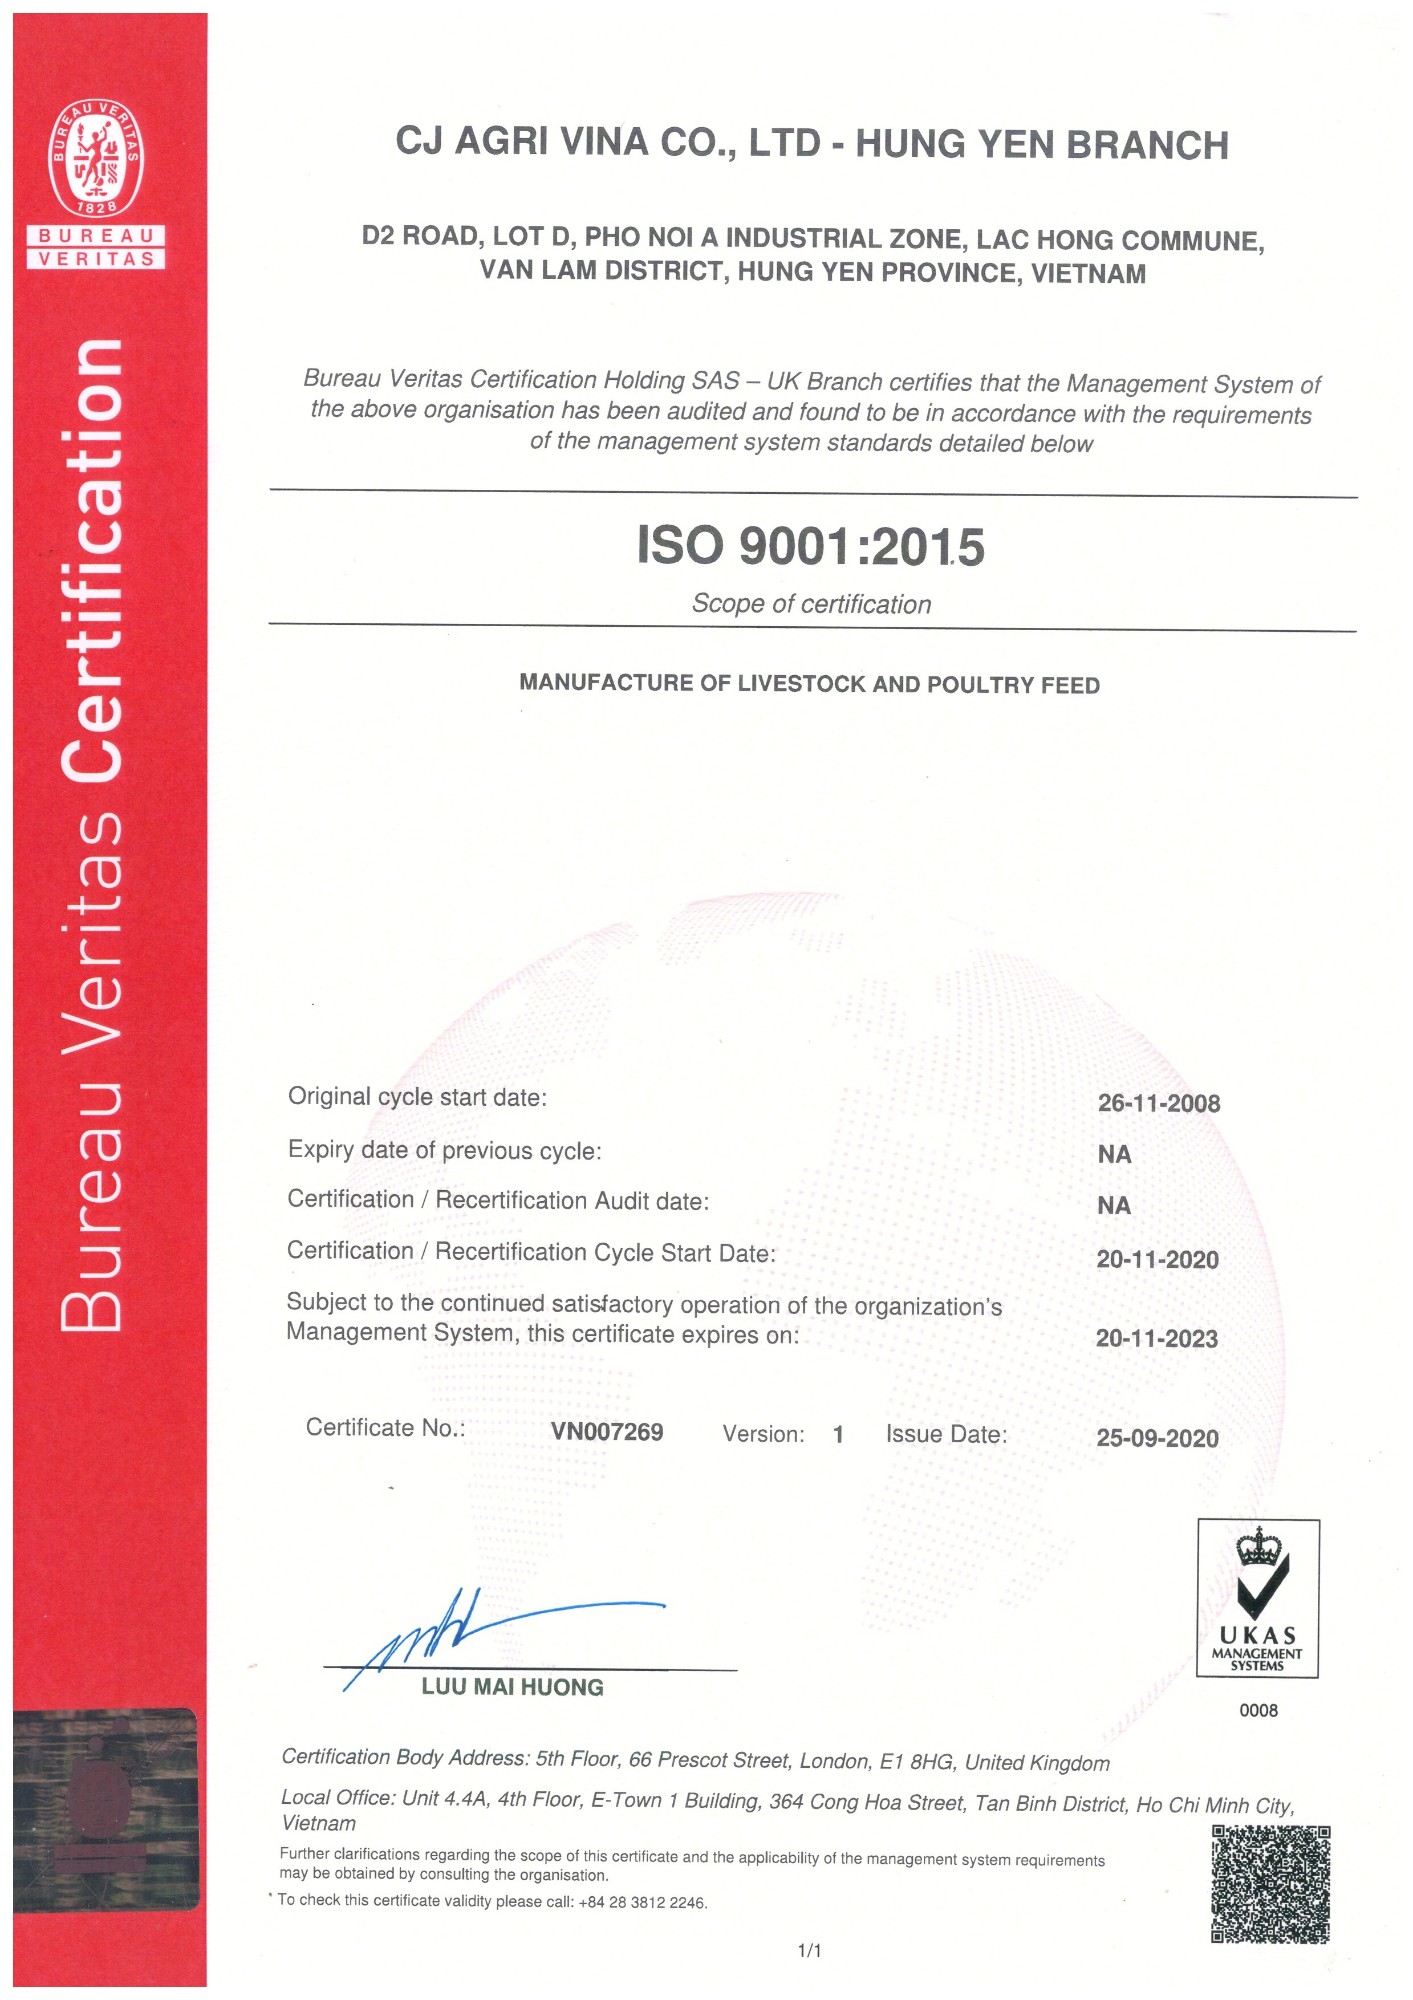 CJ Vina Agri - Hung Yen _ ISO 9001:2015 Certificate